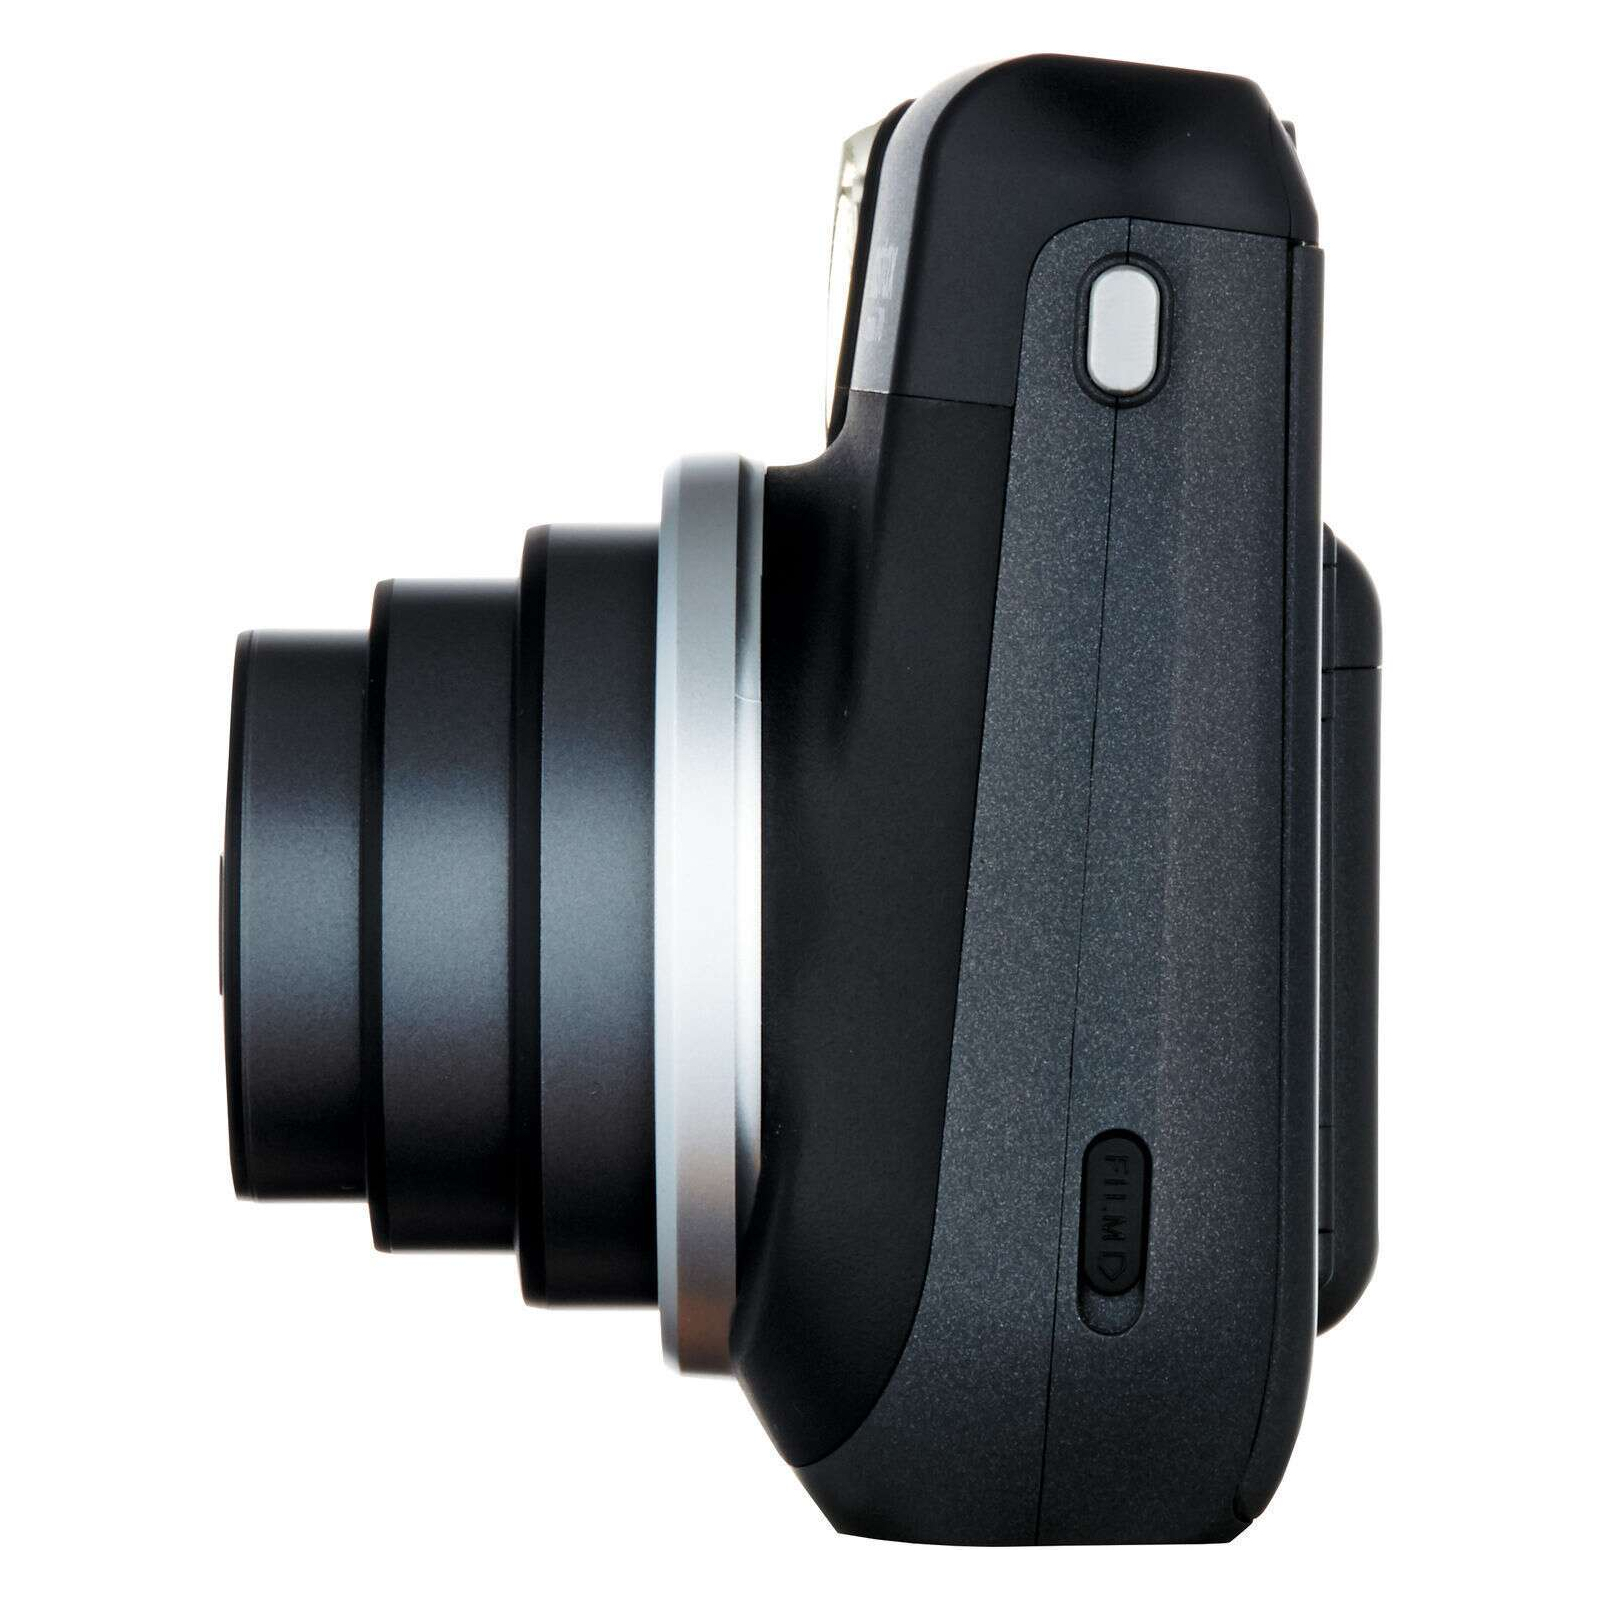 Камера миттєвого друку Fujifilm INSTAX Mini 70 Black (16513877) зображення 3